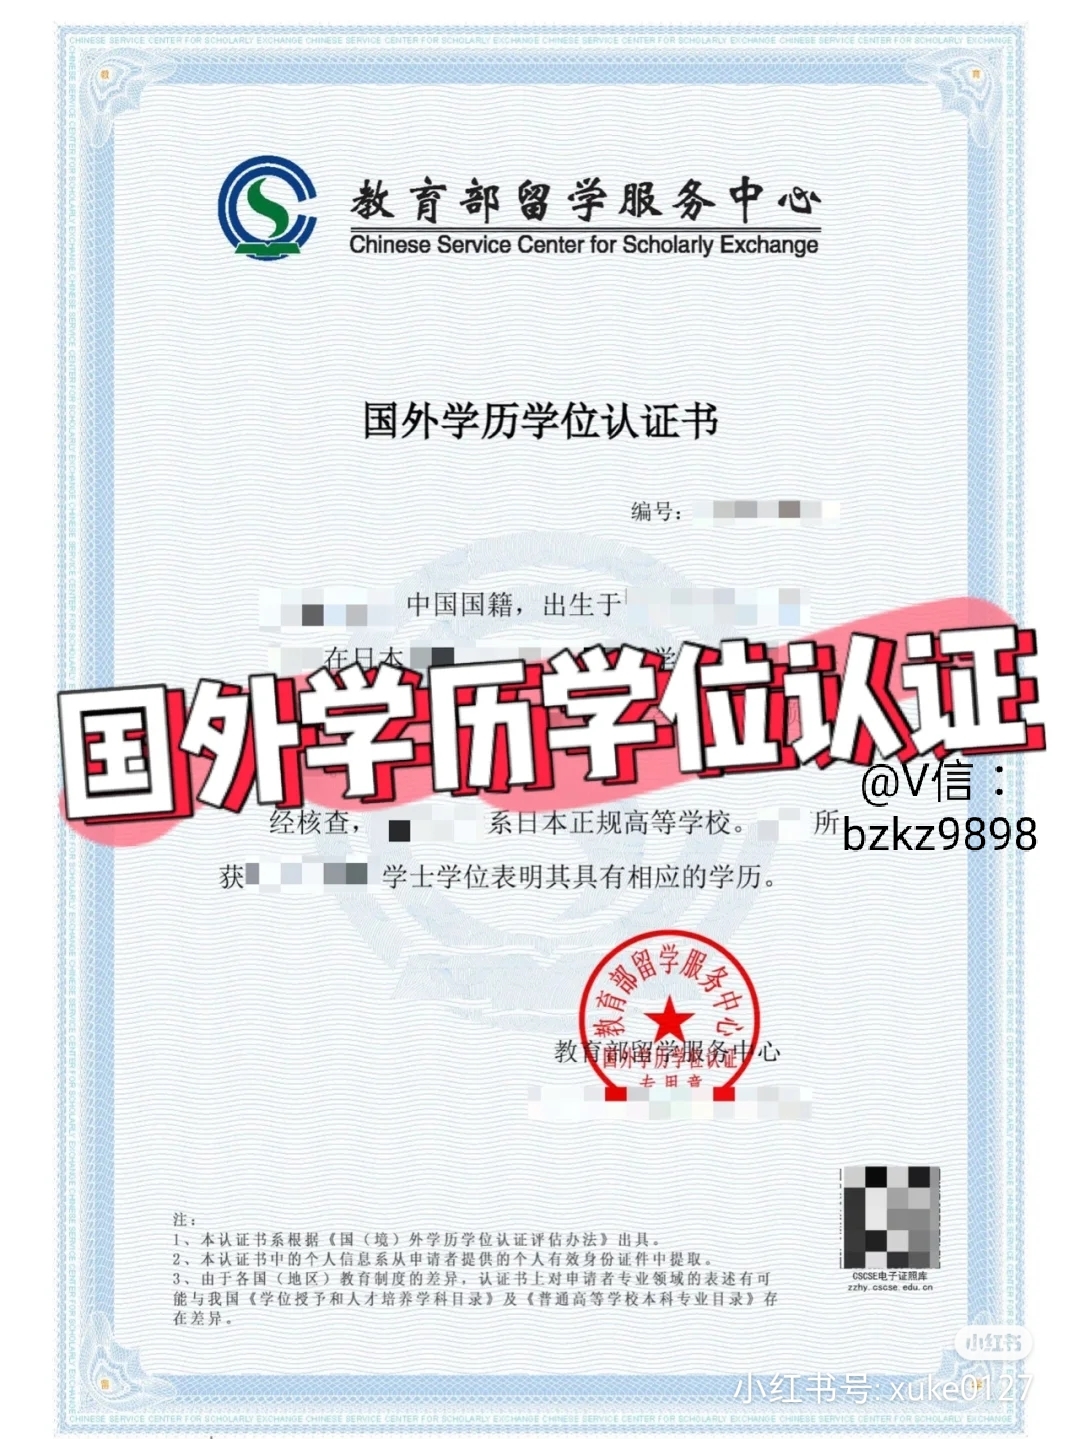 中国留学网-认证院校名单（菲律宾院校） - 中菲留学-一手海外名校资源,十年留学服务经验